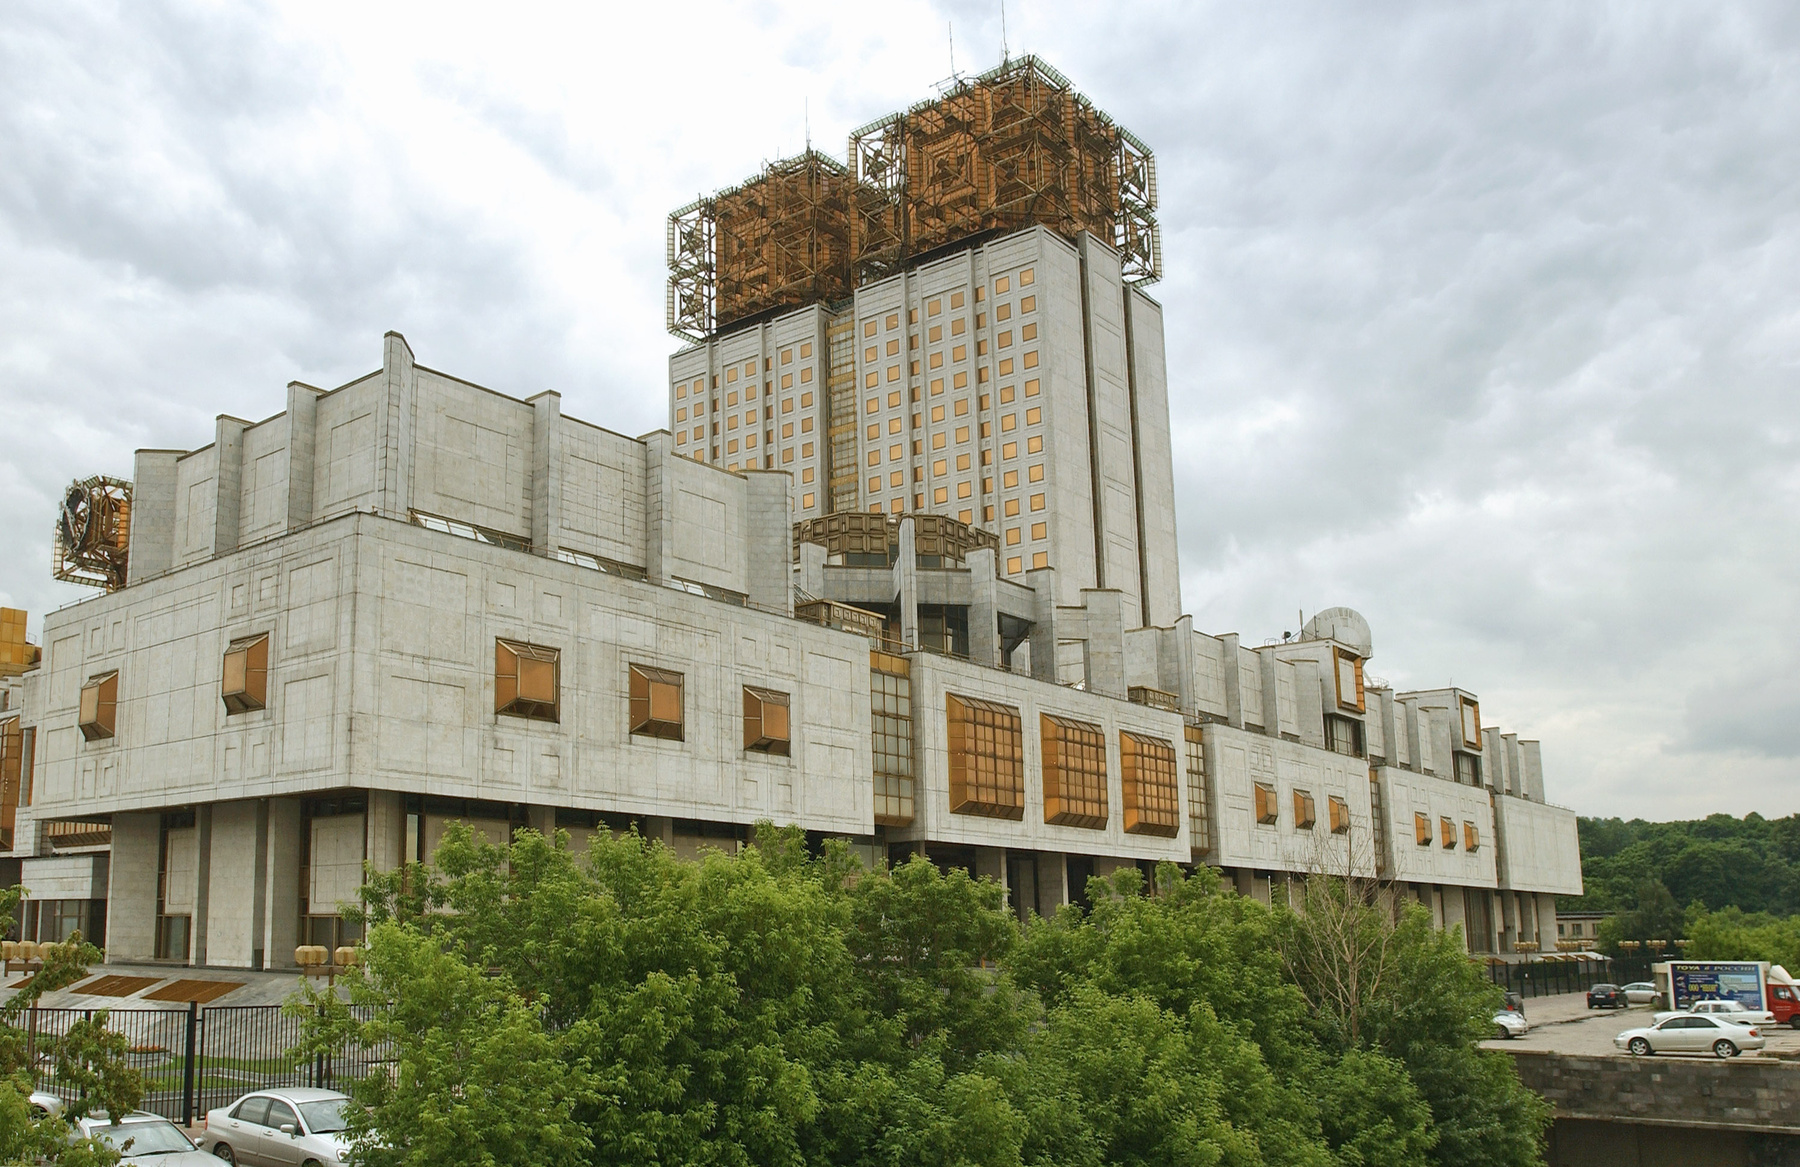 A Kijevben található, 1971-ben épült Tudományos Intézet jó példája az építészeti tér fogalmának és kiválóan jellemzi a Szovjetunió kozmosz iránti megszállottságát.

